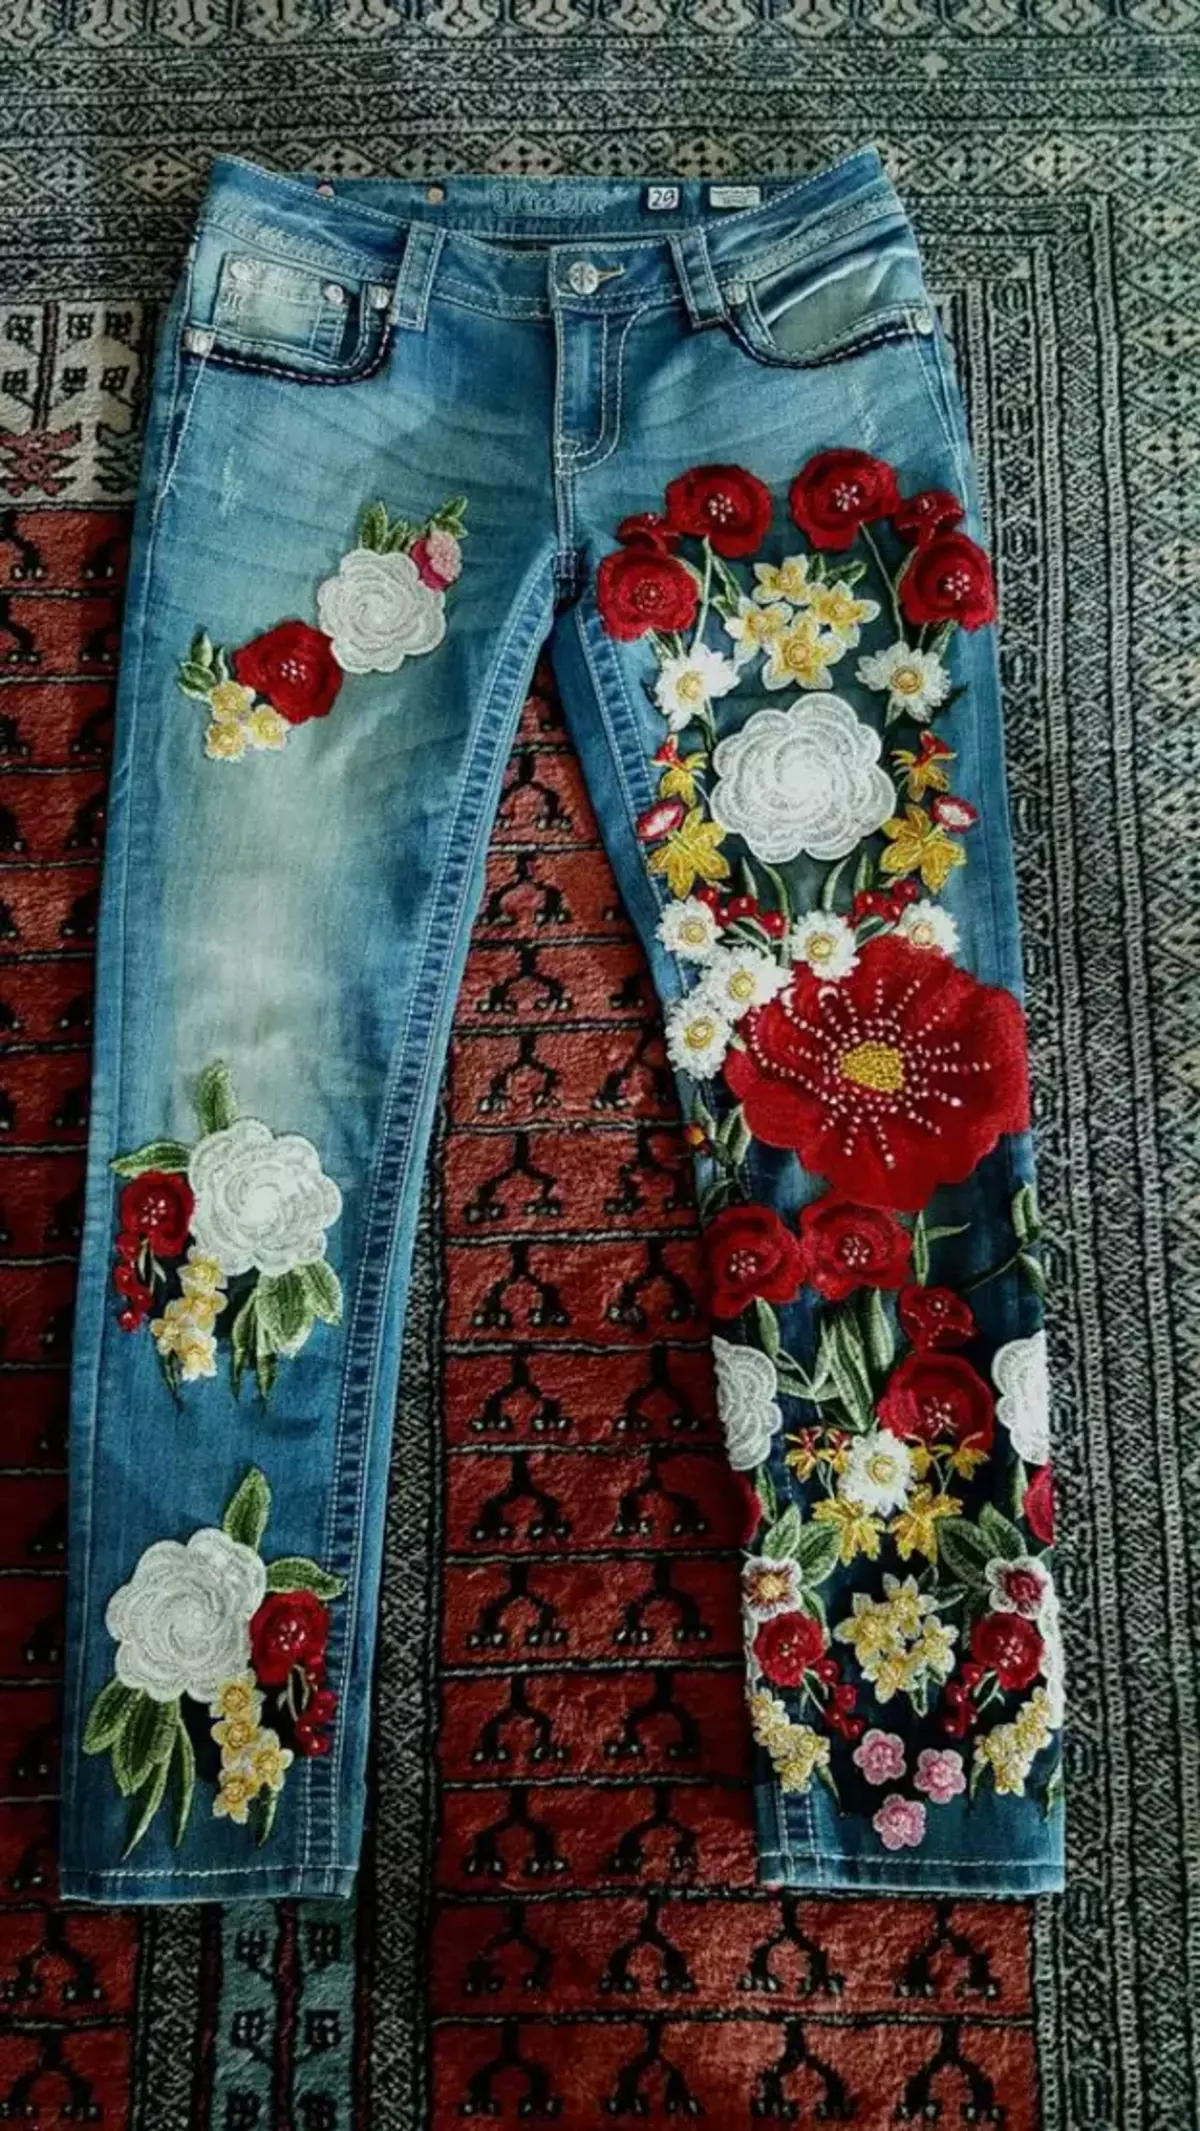 Bocho jeans - robahan sareng leungeun sorangan